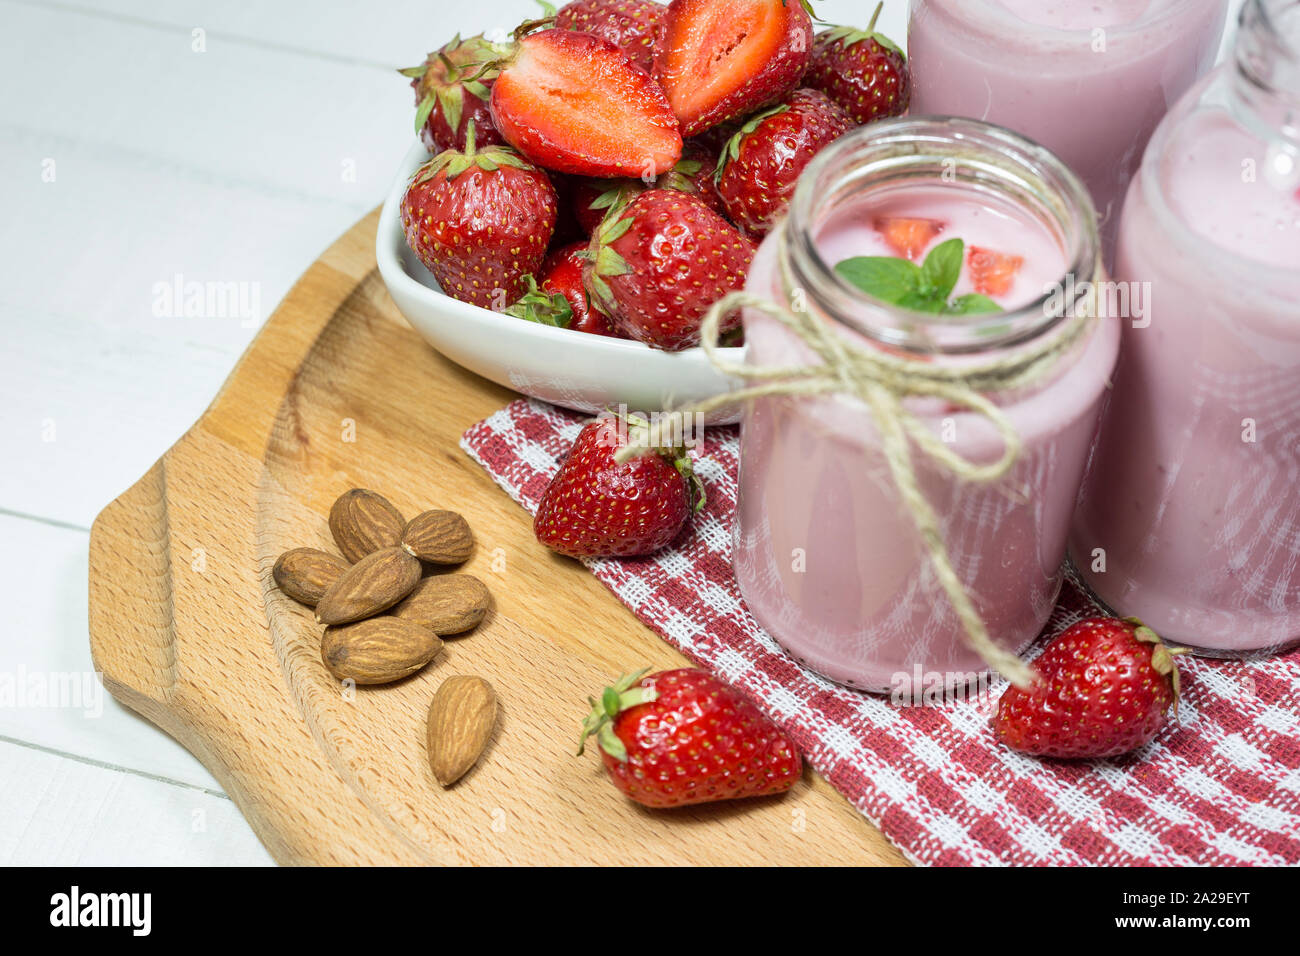 Frische Erdbeeren, Mandeln und hausgemachte Frucht Joghurt auf Holzplatte. Gesunde Ernährung Konzept. Stockfoto